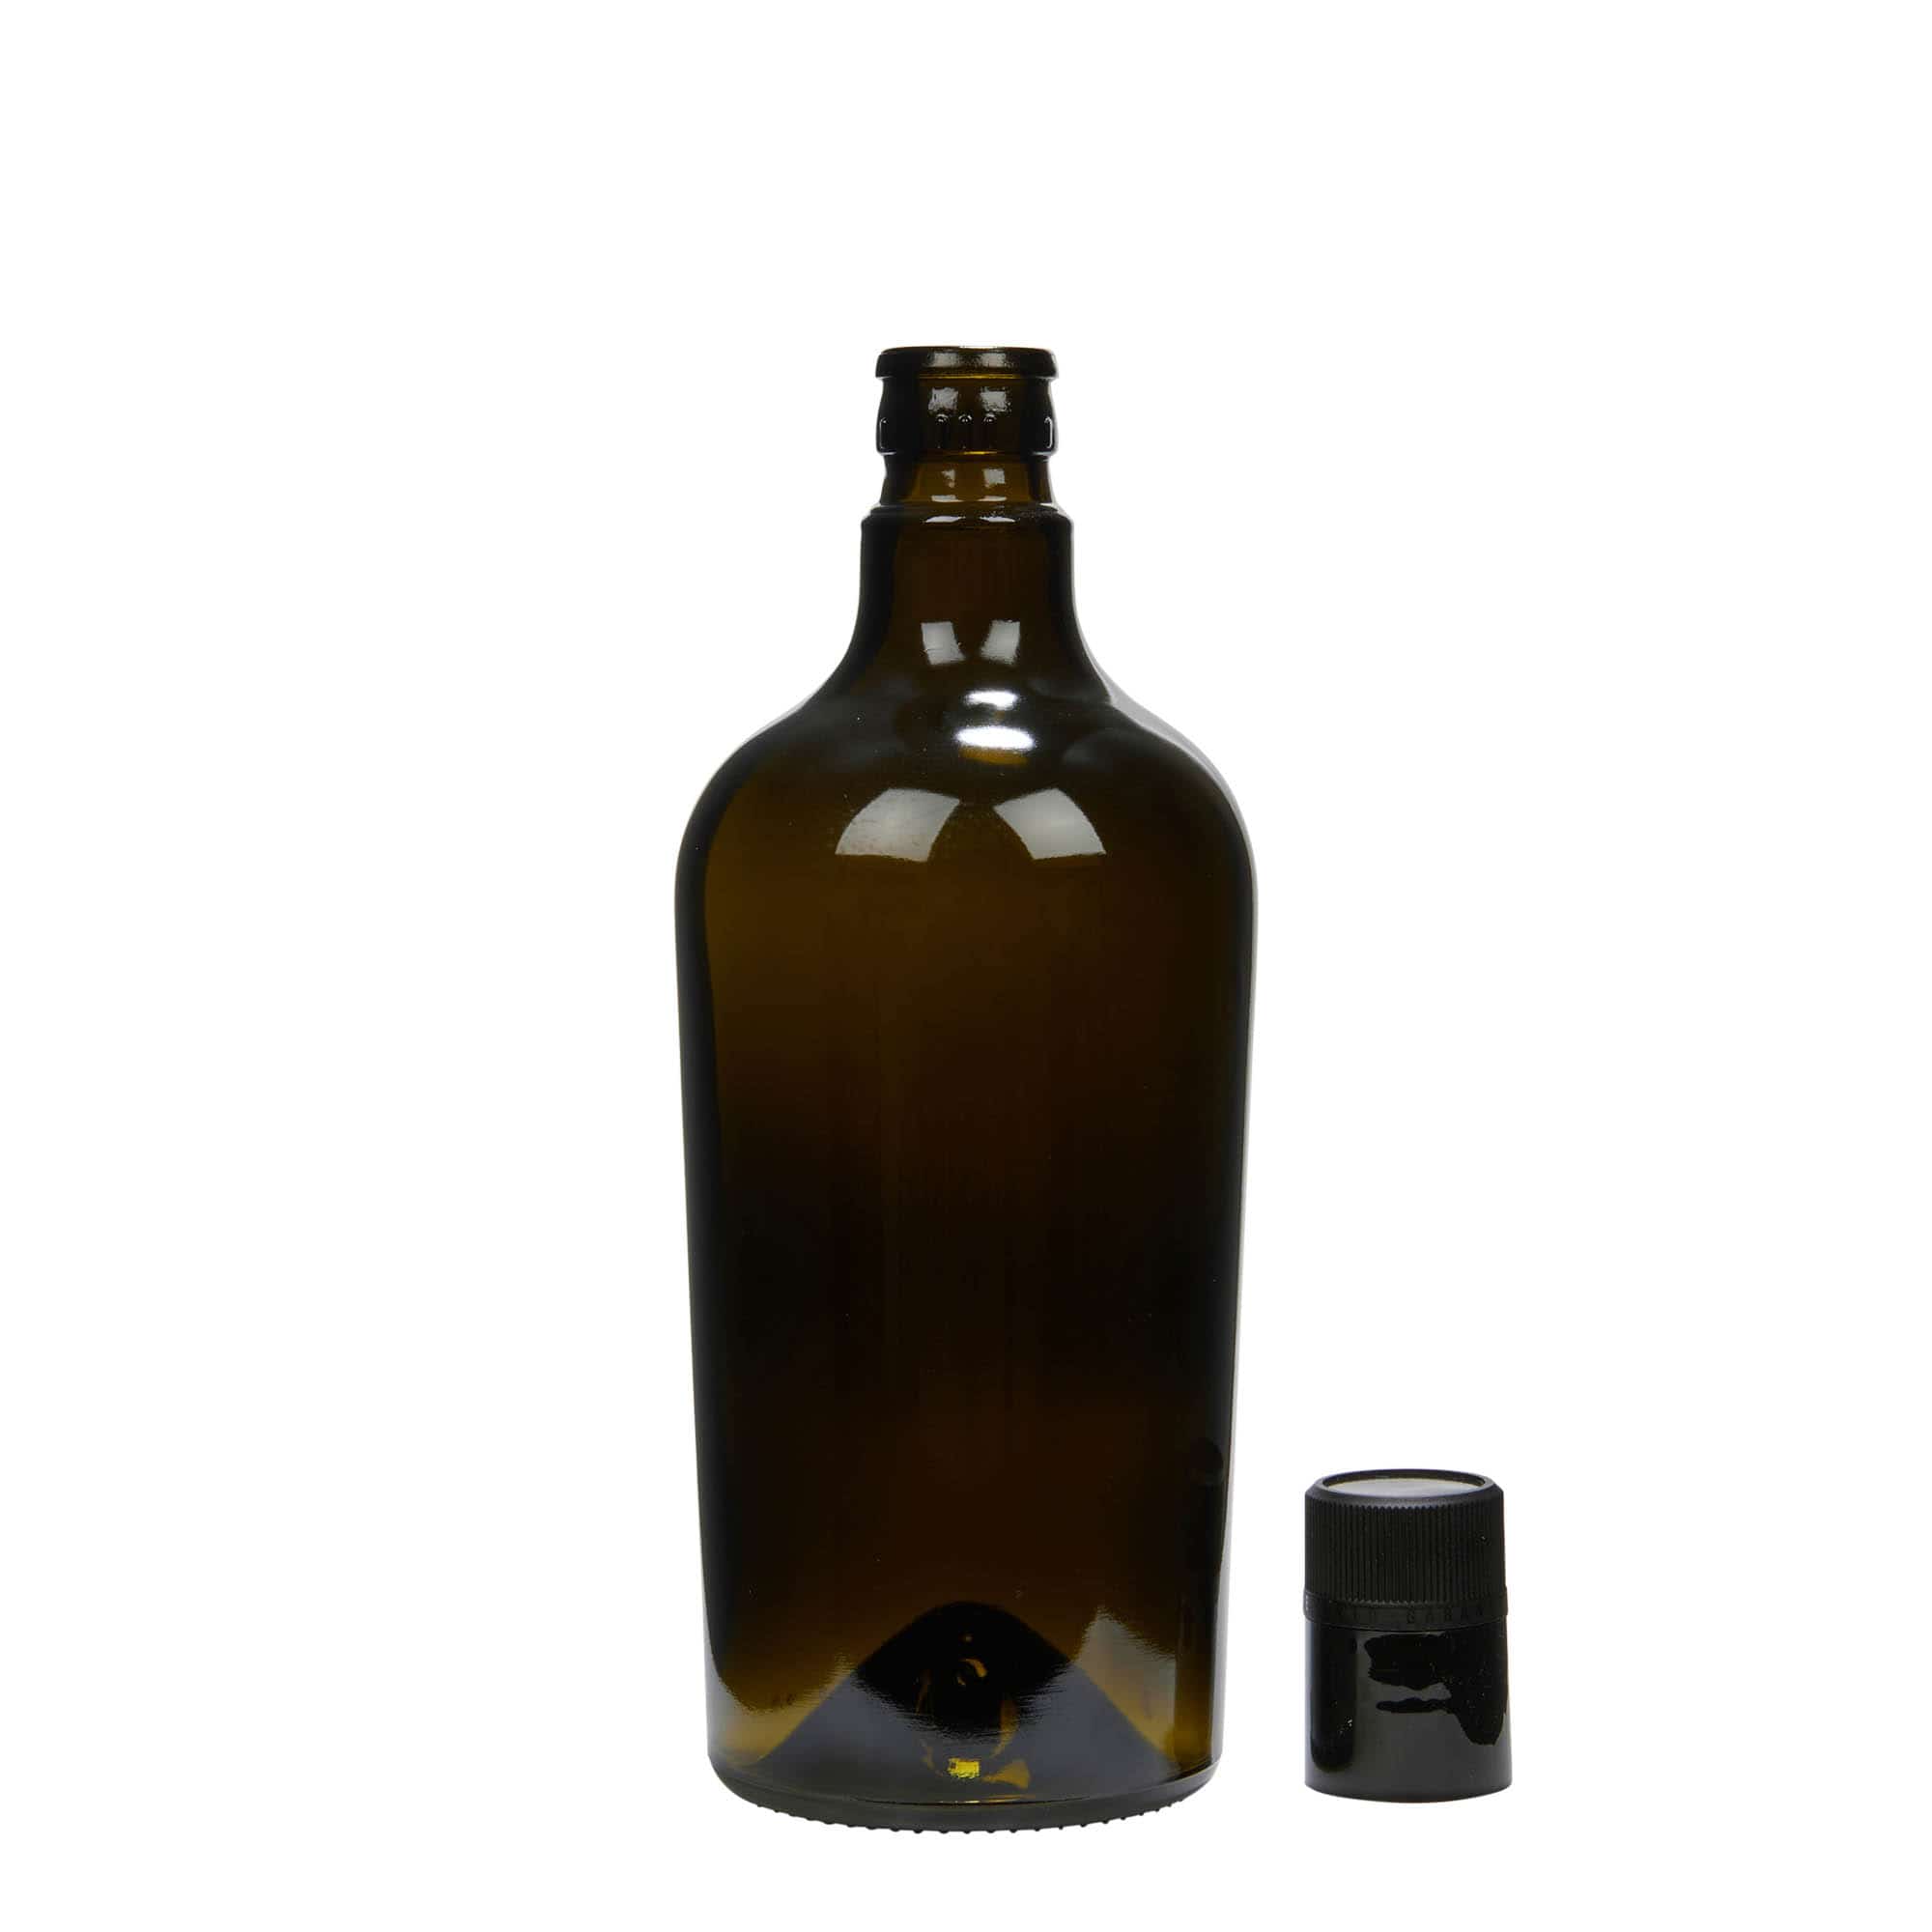 750 ml butelka na ocet/olej 'Oleum', szkło, kolor zielony antyczny, zamknięcie: DOP